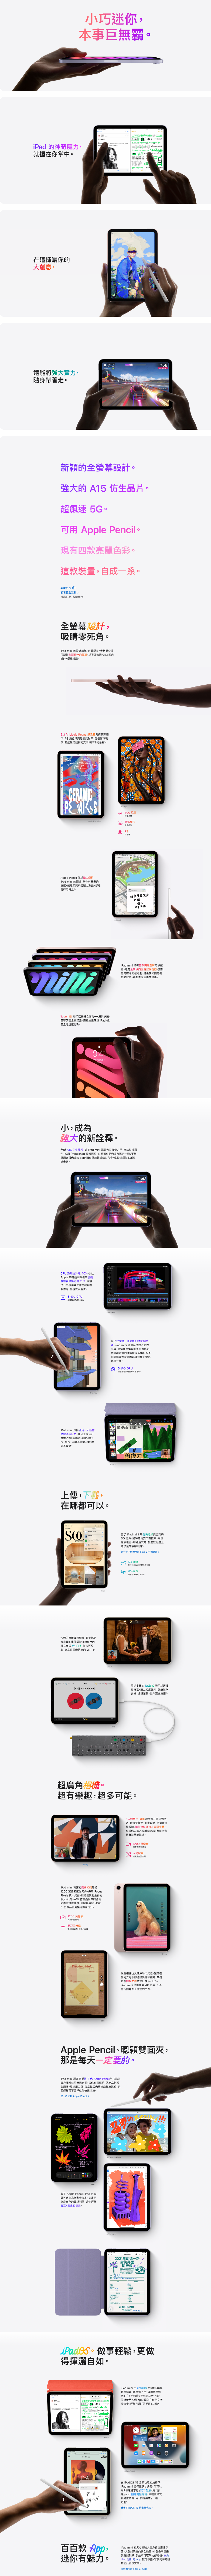 iPad mini 6 8.3吋64GB 太空灰(Wi-Fi) MK7M3TA/A - 全國電子